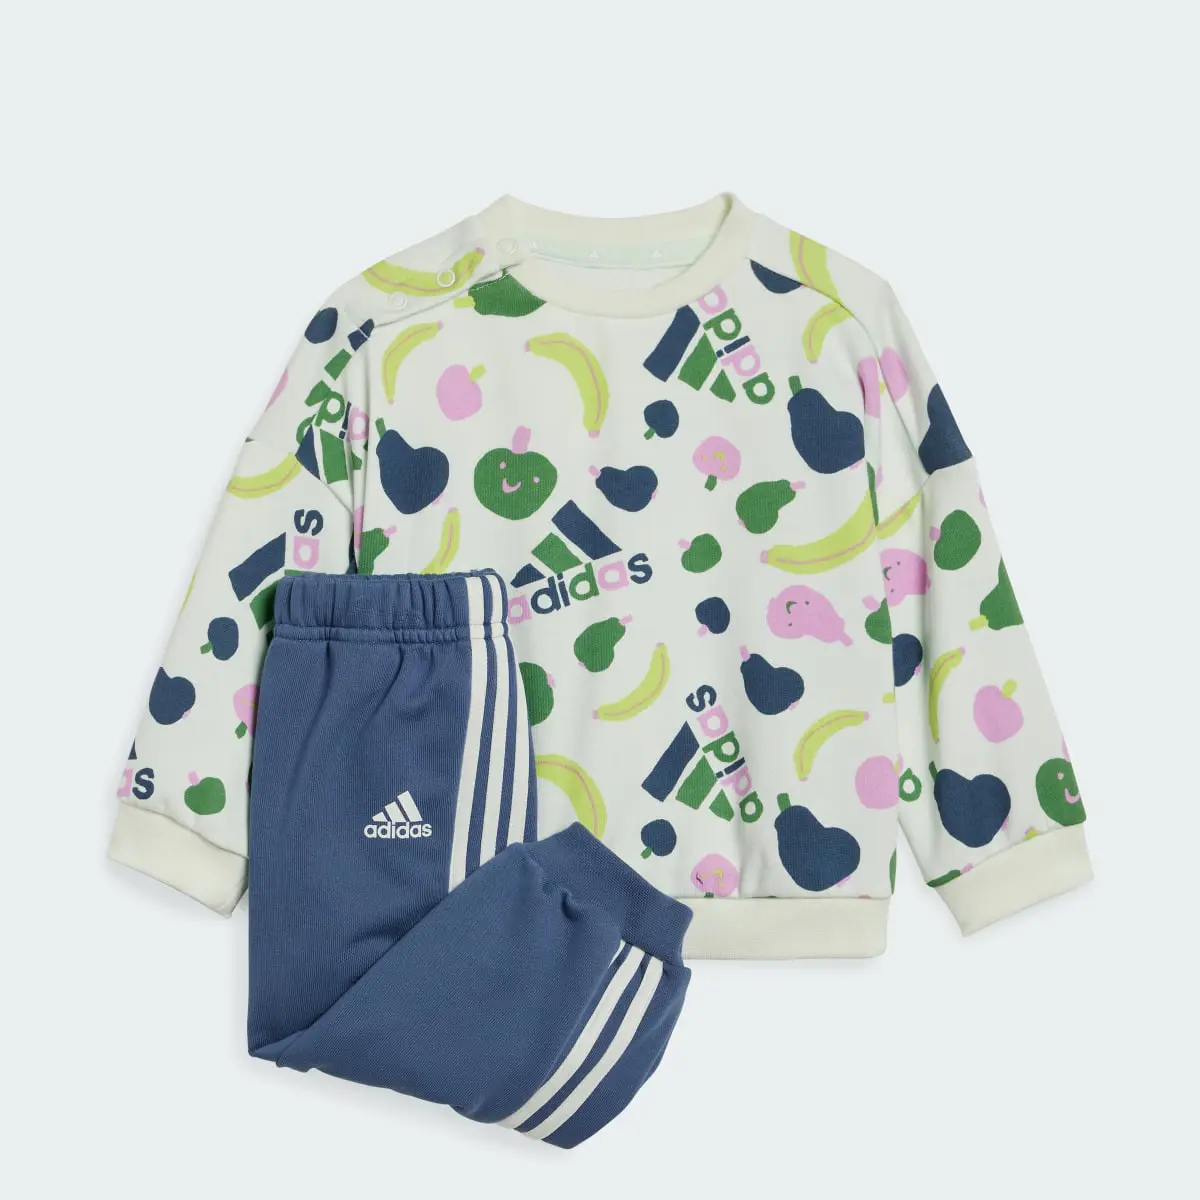 Adidas Tuta Essentials Allover Print Infant. 1